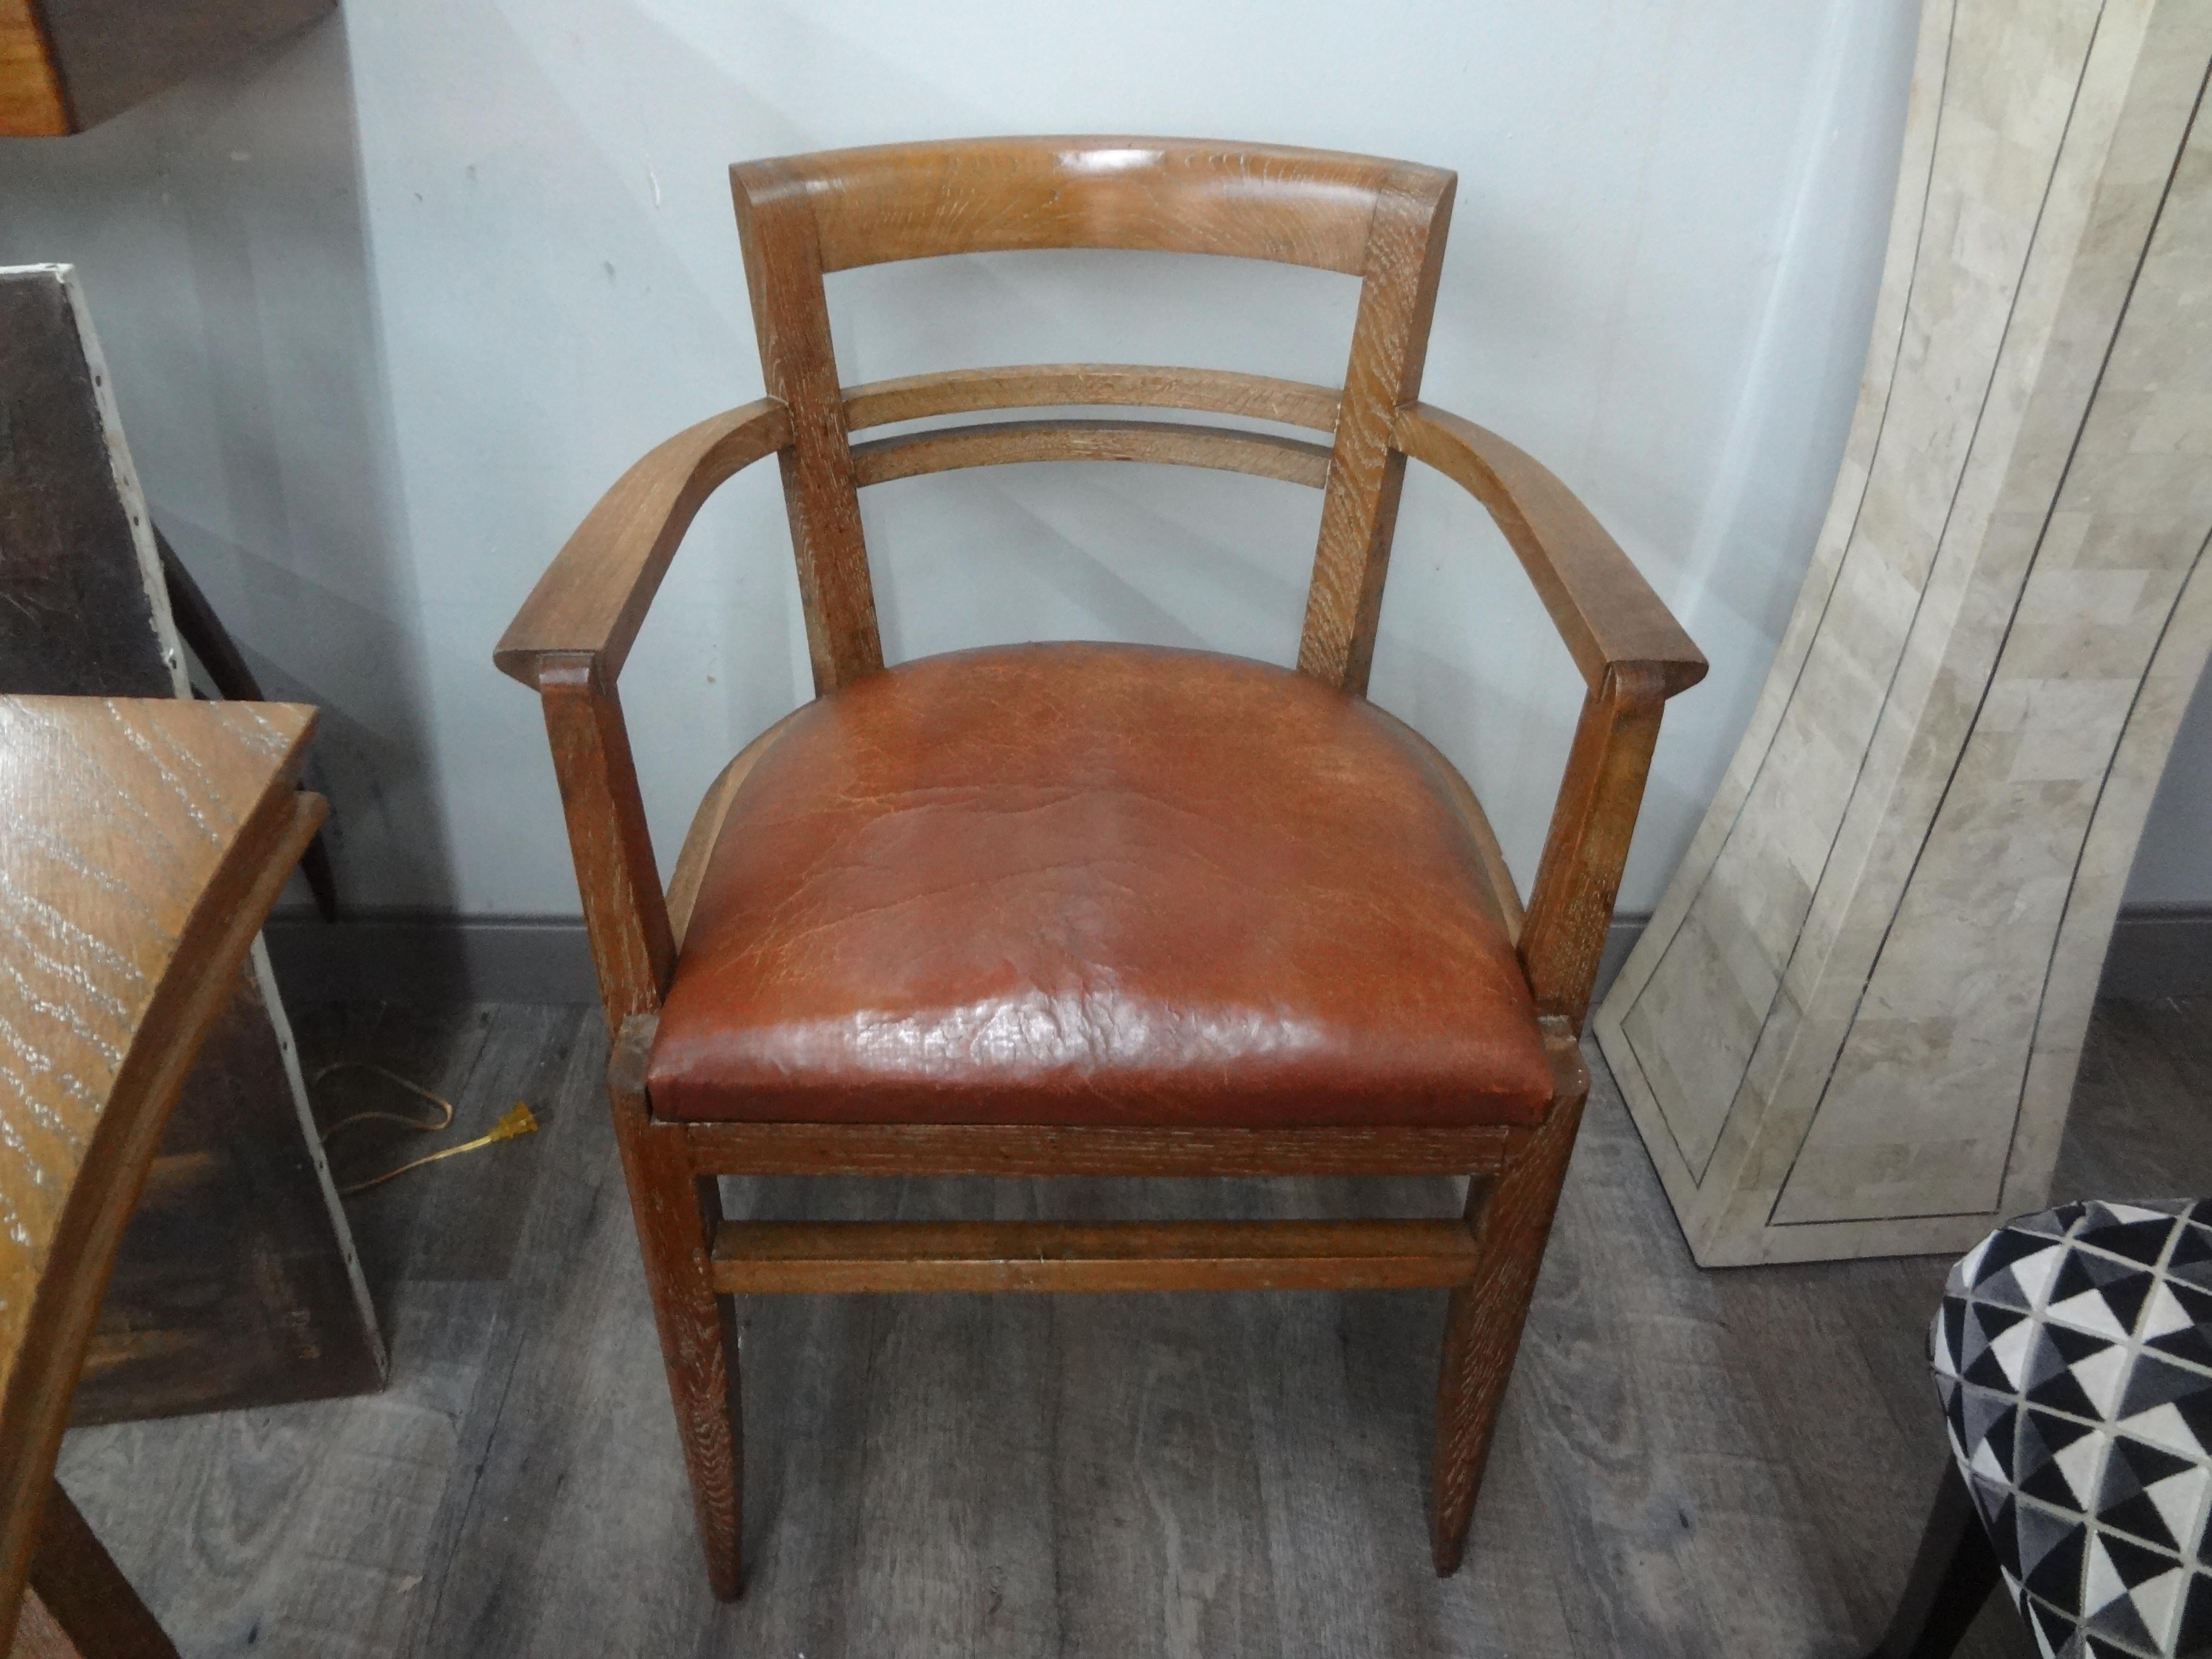 Chaise de bureau Art Déco en chêne cérusé attribuée à Andre Sornay.
Magnifique chaise de bureau en chêne cérusé ou chaulé de style Art Déco français, attribuée à Andre Sornay. Cette superbe chaise de bureau est dotée d'une assise en cuir vieilli et